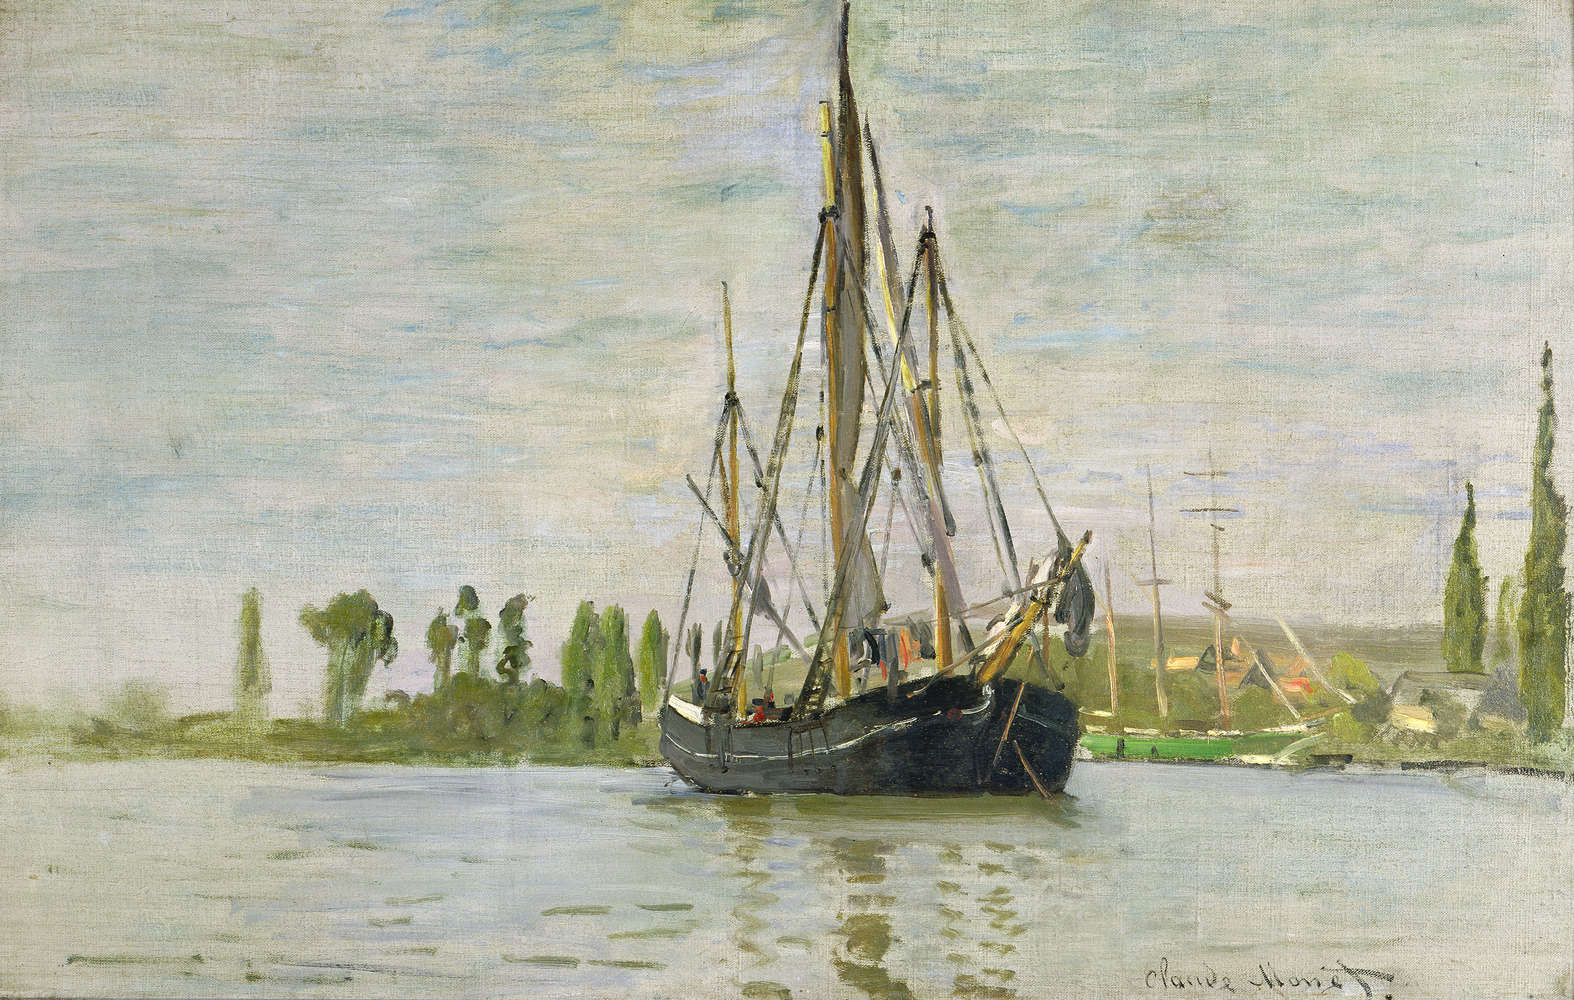             Papier peint panoramique "La Chasse-Marée à l'ancre" de Claude Monet
        